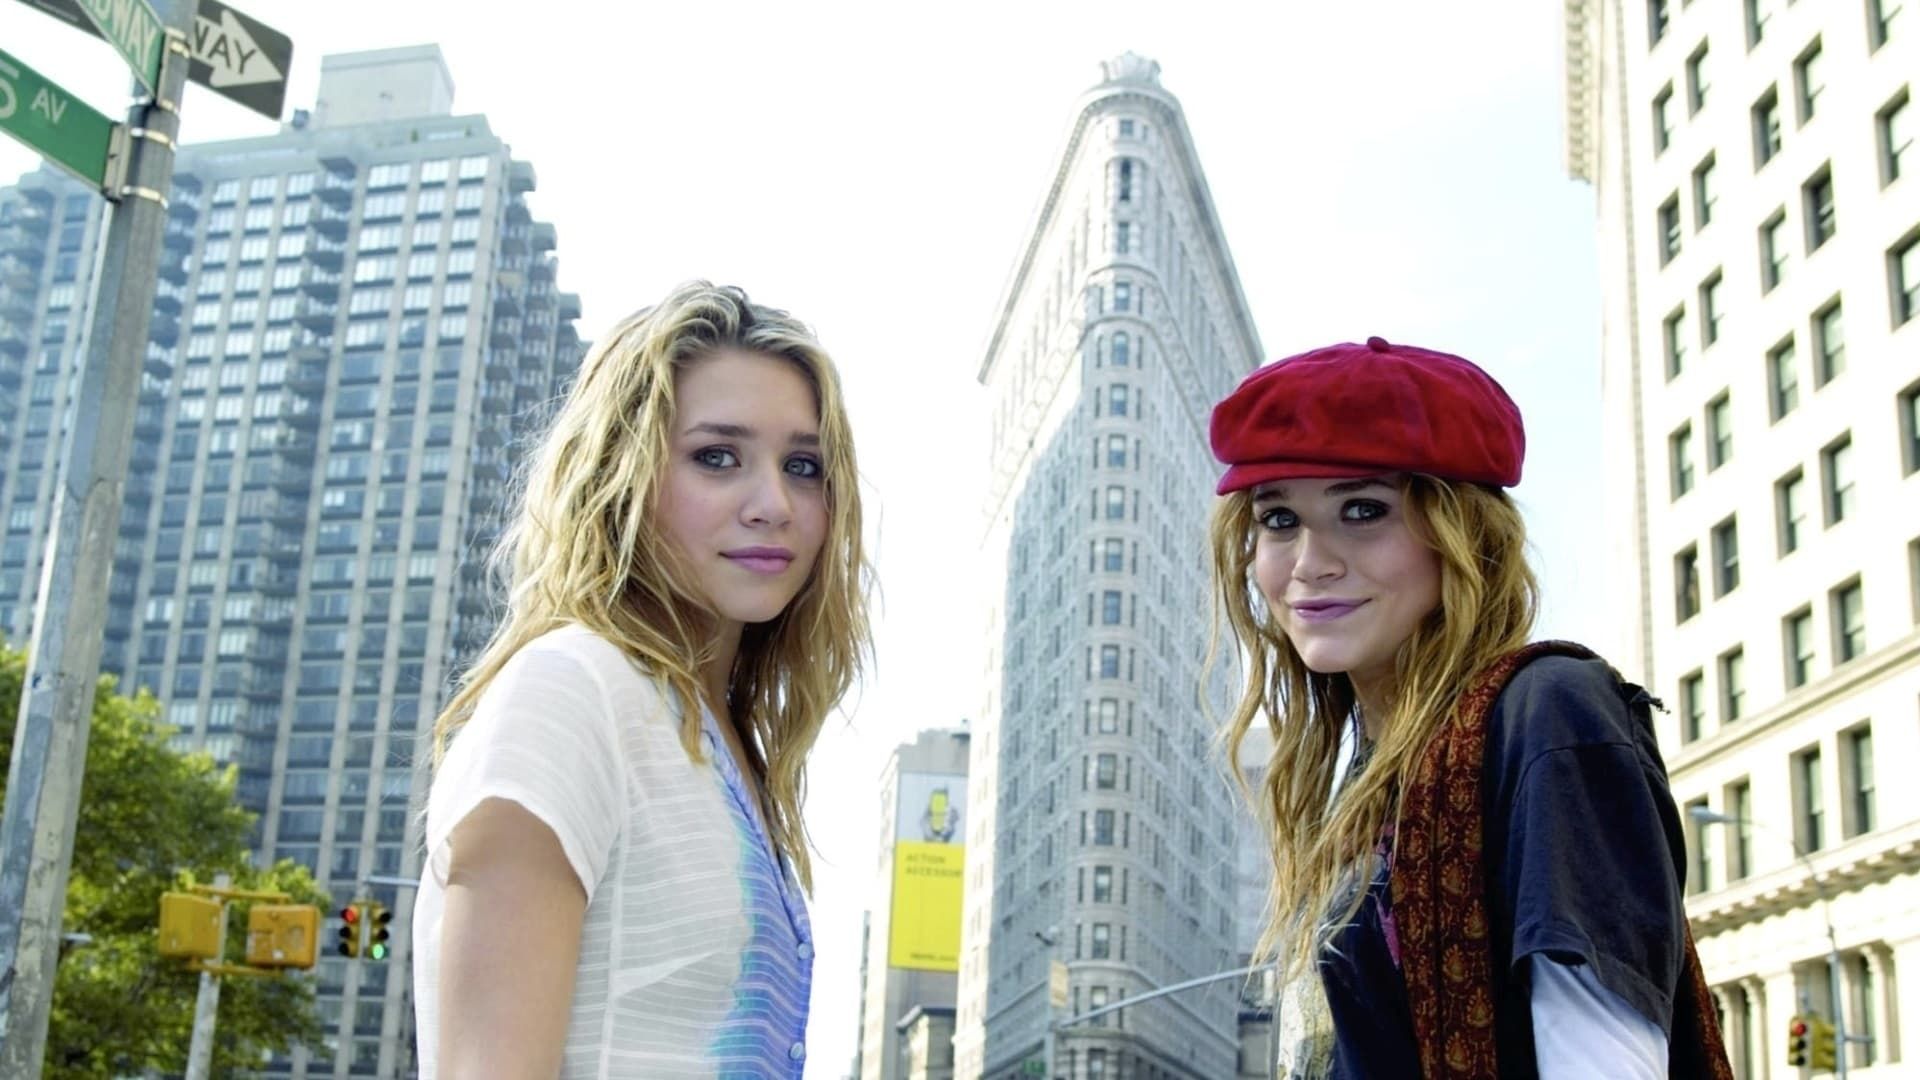 No Pique de Nova York marca a última reunião das irmãs Ashley e Mary-Kate Olsen nas telonas (Foto: Divulgação)